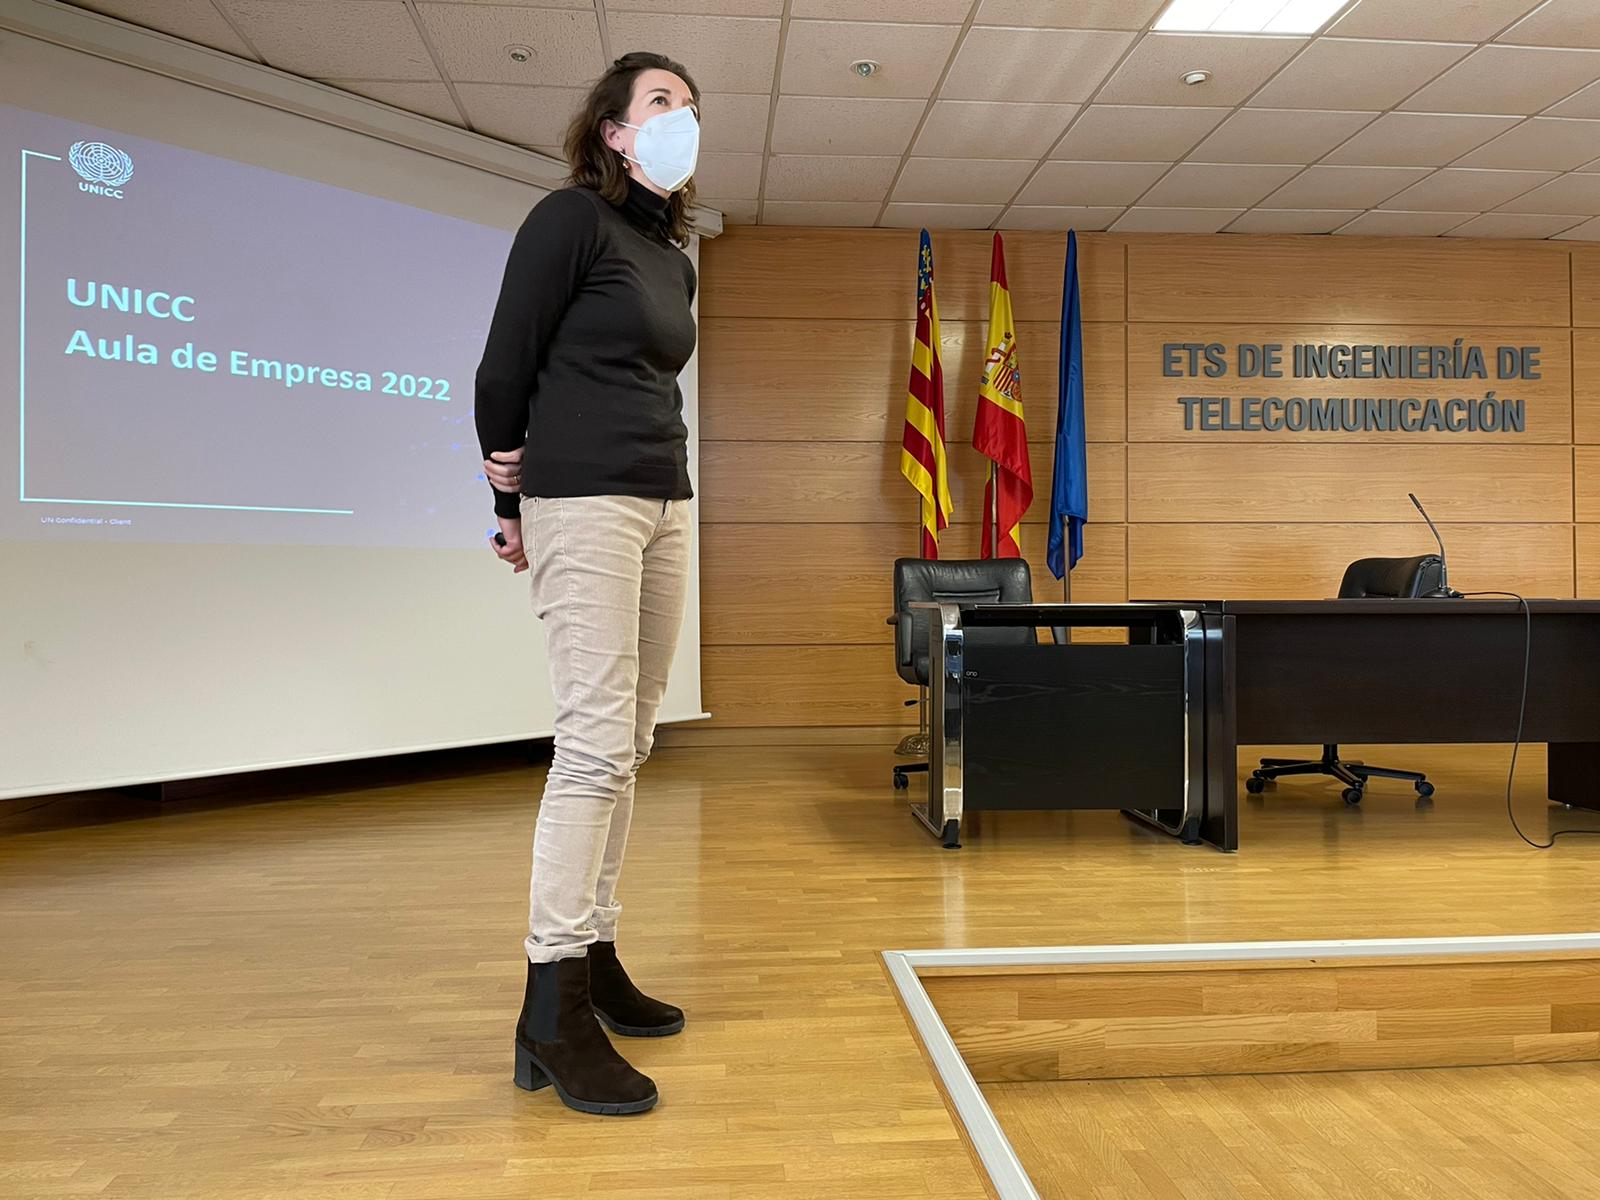 UNICC's presentation at Aula de Empresa